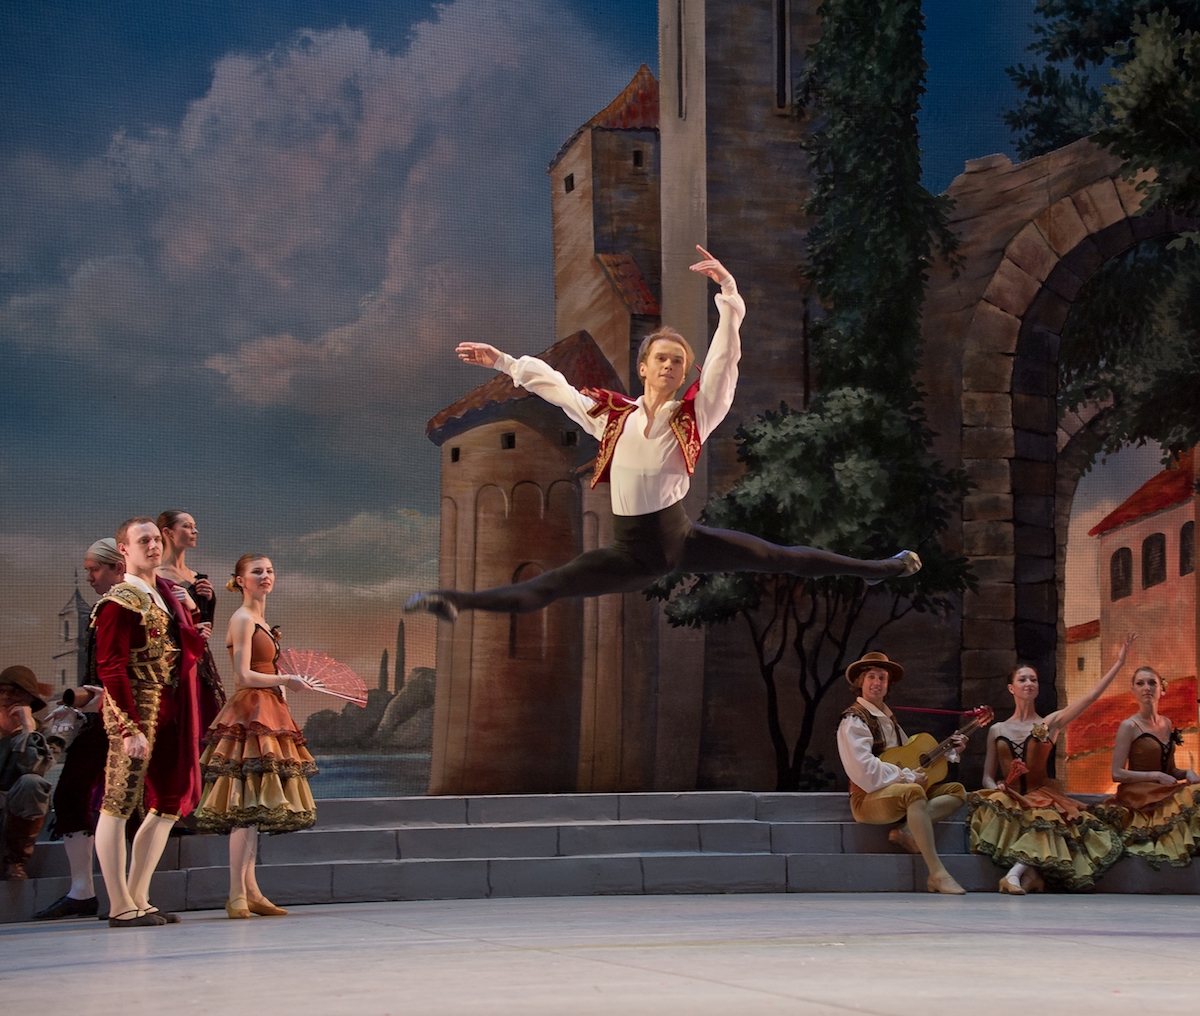 National Ballet of Ukraine’s “Don Quixote”. Photo courtesy of NBU.